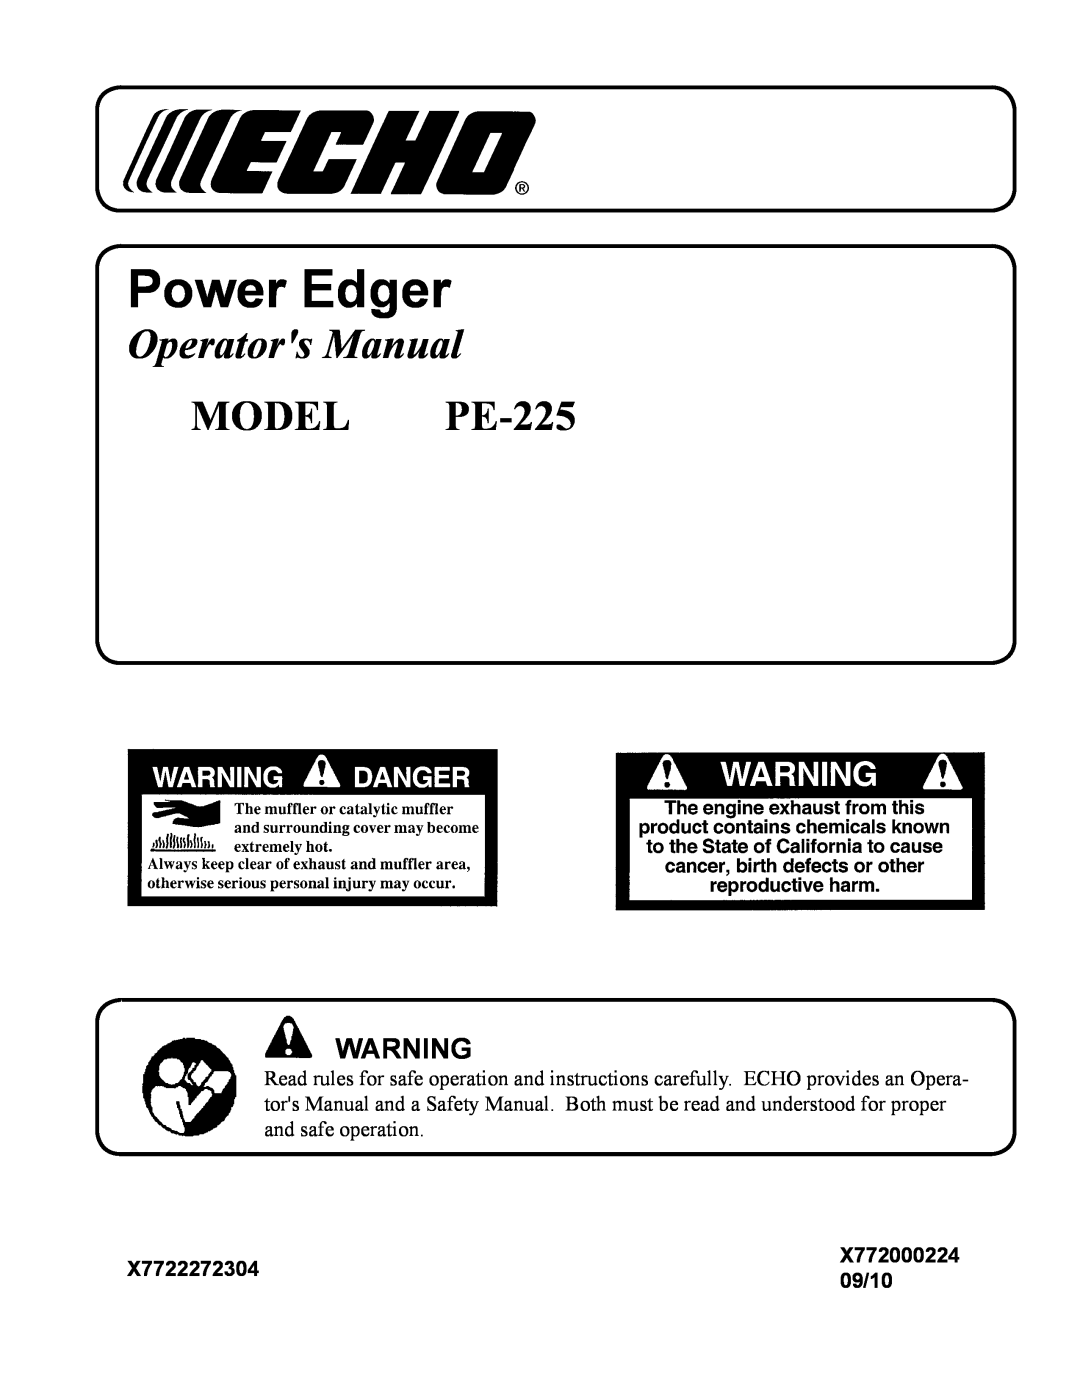 Echo manual X7722272304, 09/10, Power Edger, Operators Manual, MODEL PE-225, X772000224 